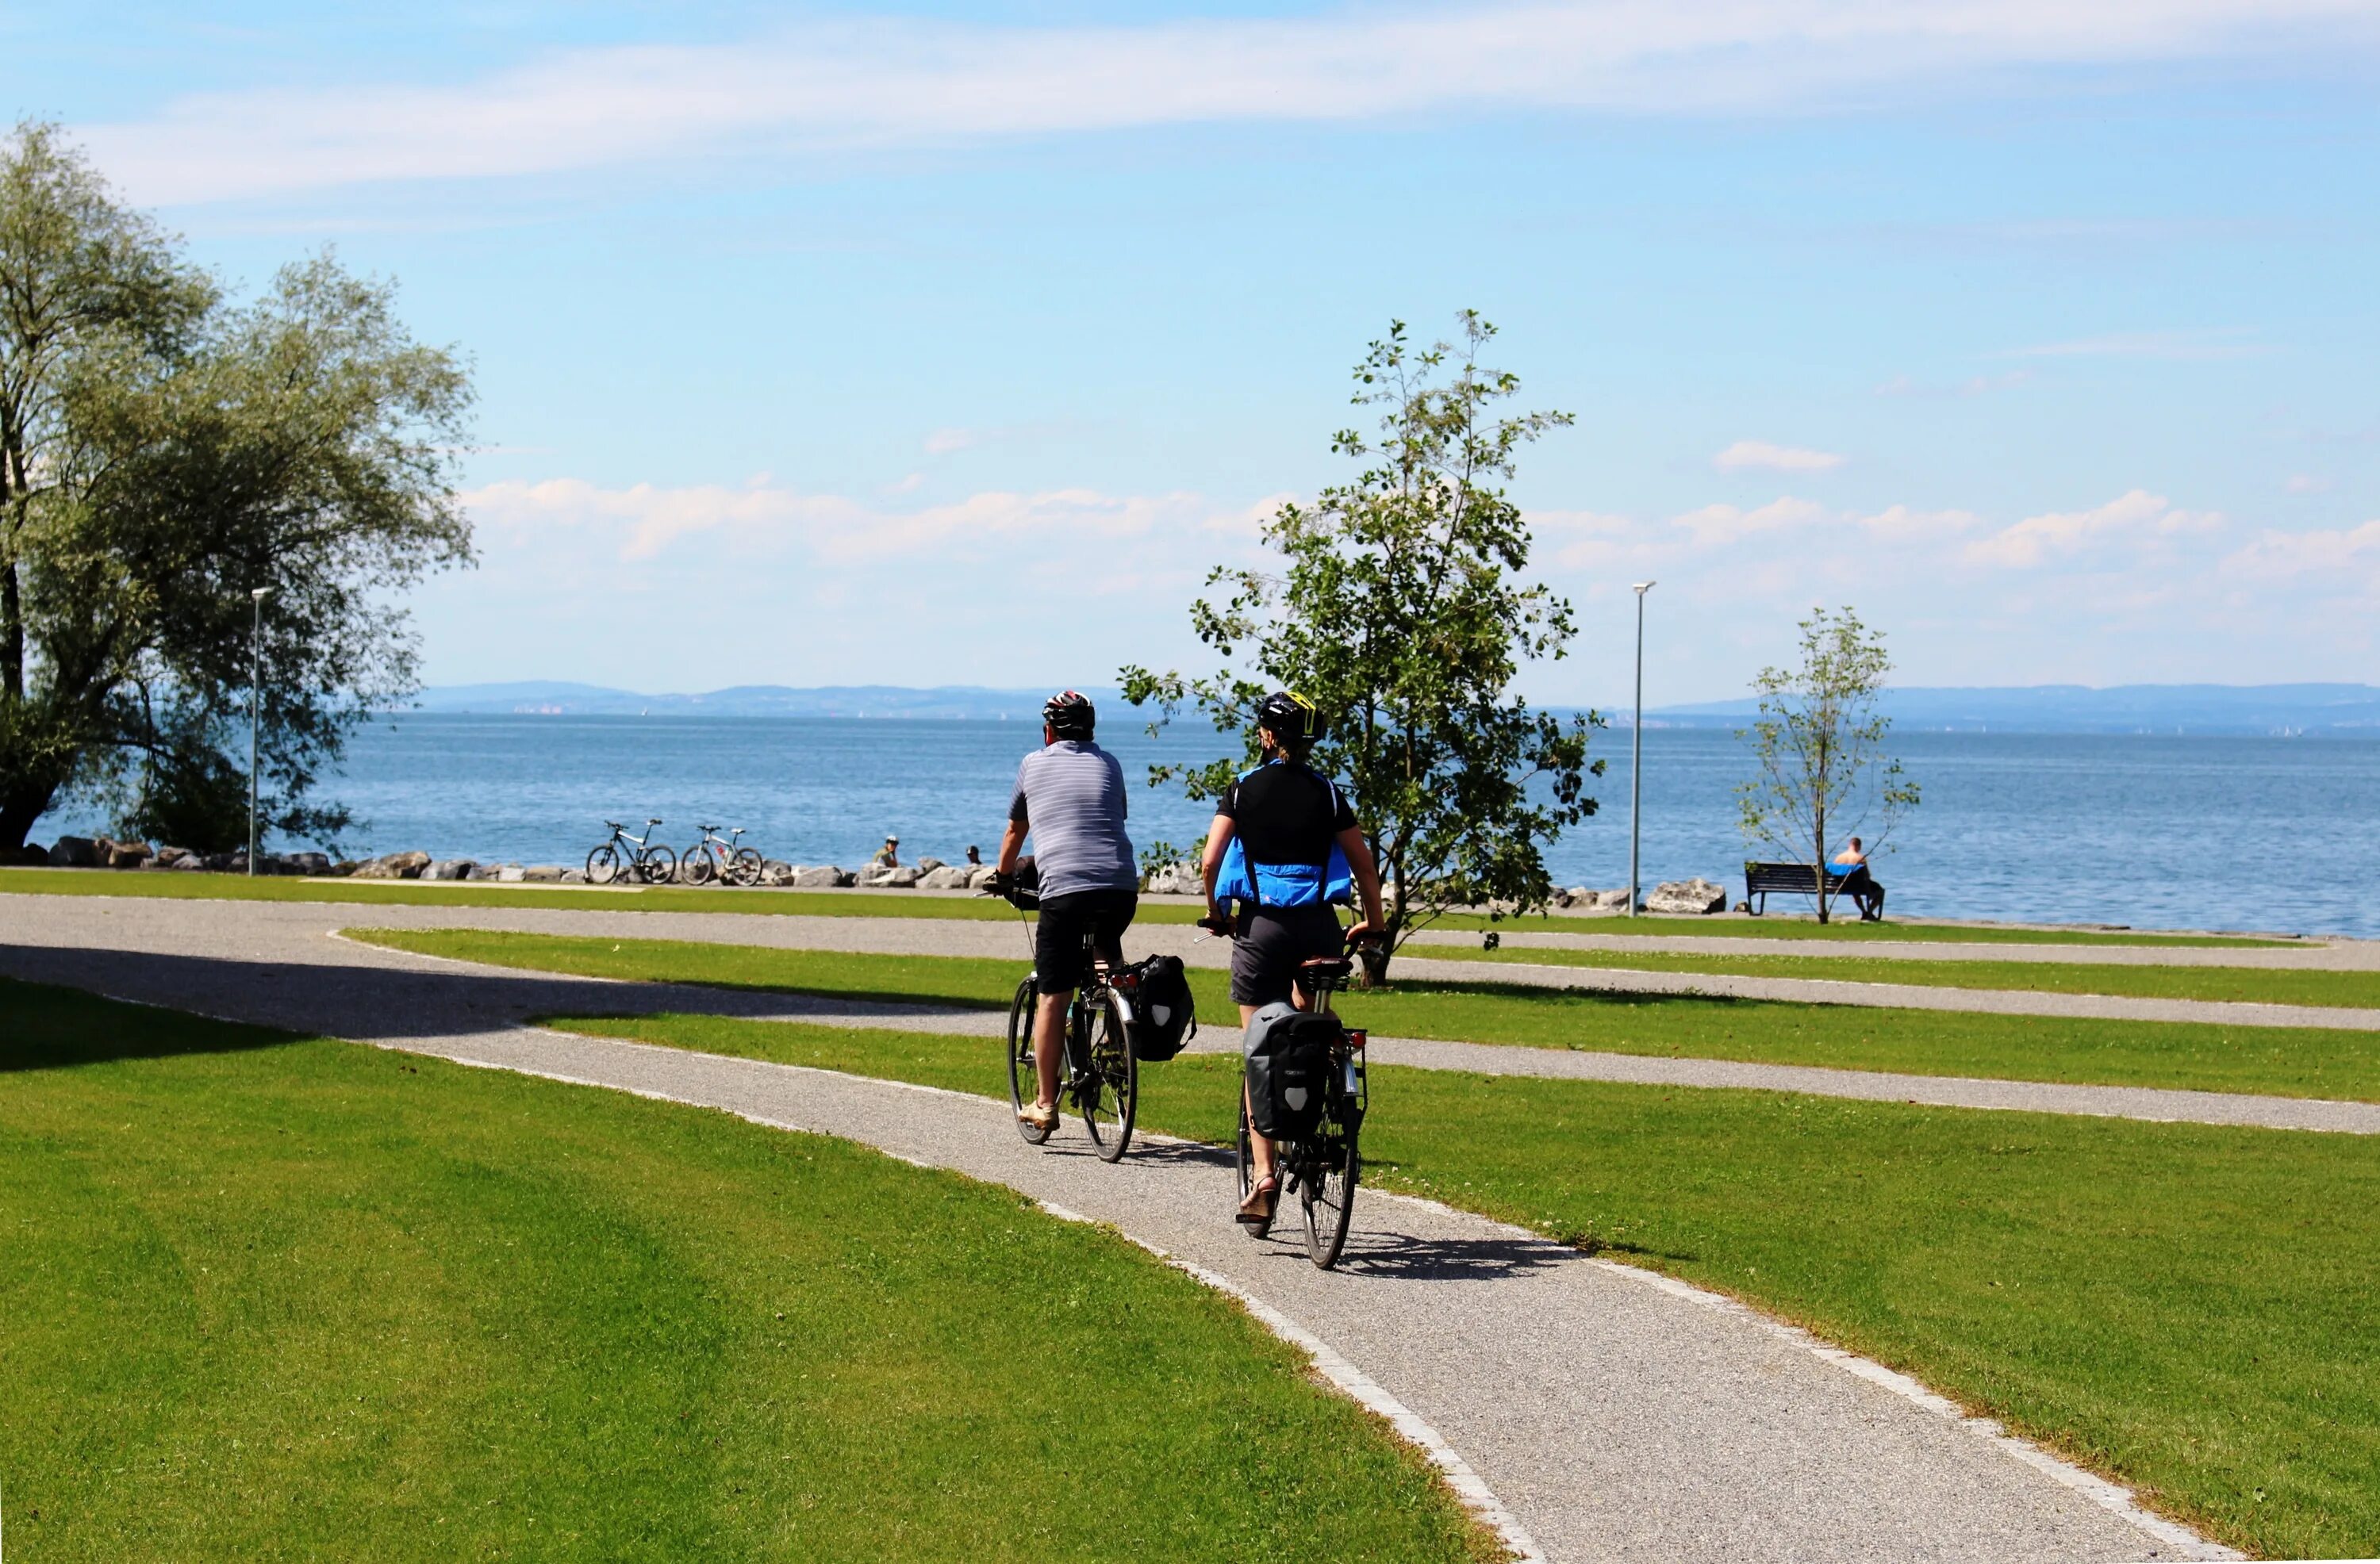 Какое вы место для прогулок. Боденское озеро велодорожки. Батуми набережная велодорожка. Пешеходная и велосипедная дорожка. Велосипедные дорожки на побережье.